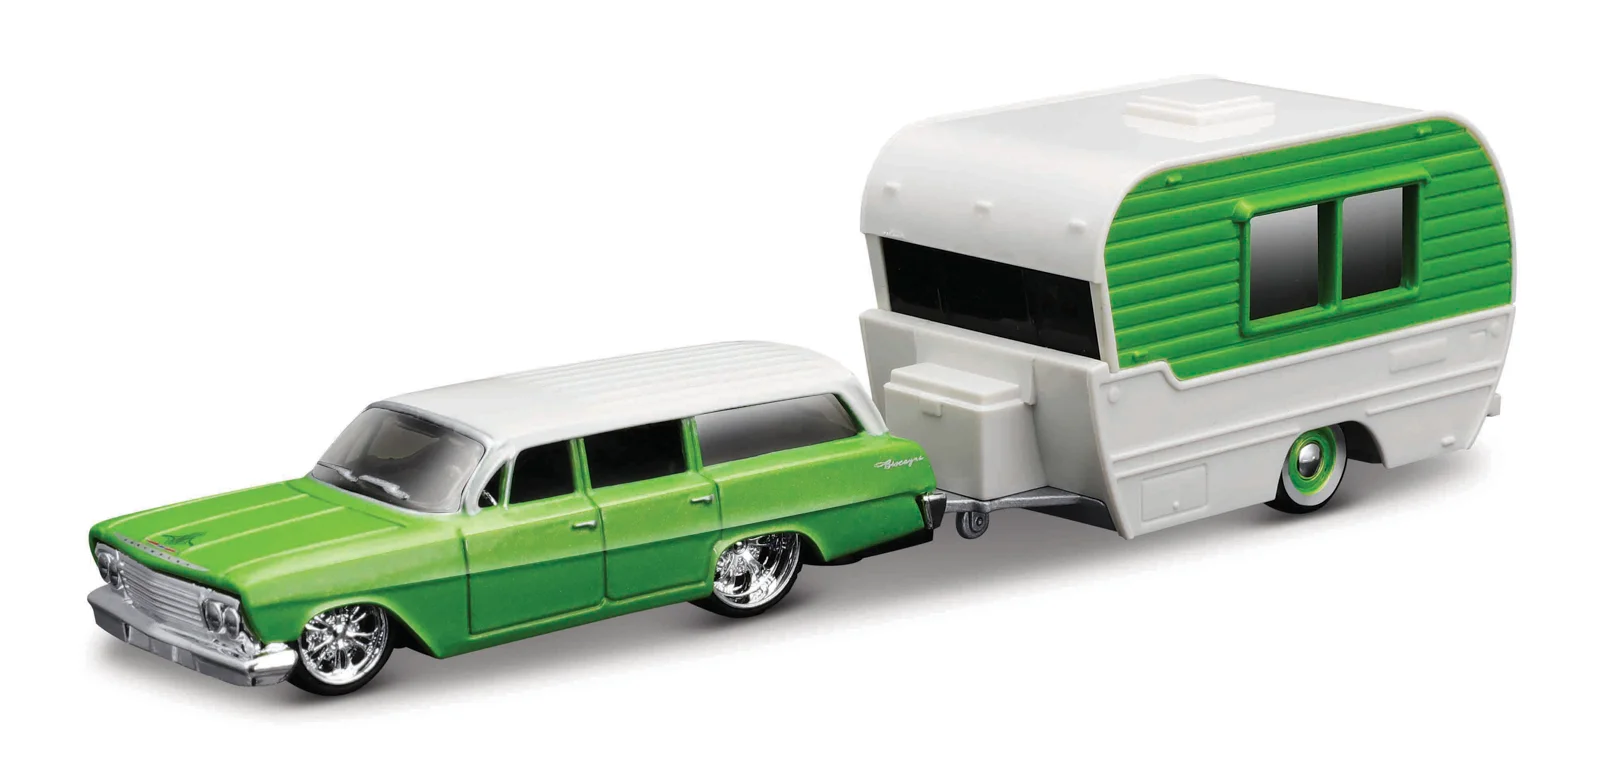 Maisto - Design Tow & Go, 1962 Chevrolet Biscayne Wagon Classic Craft, 1:64